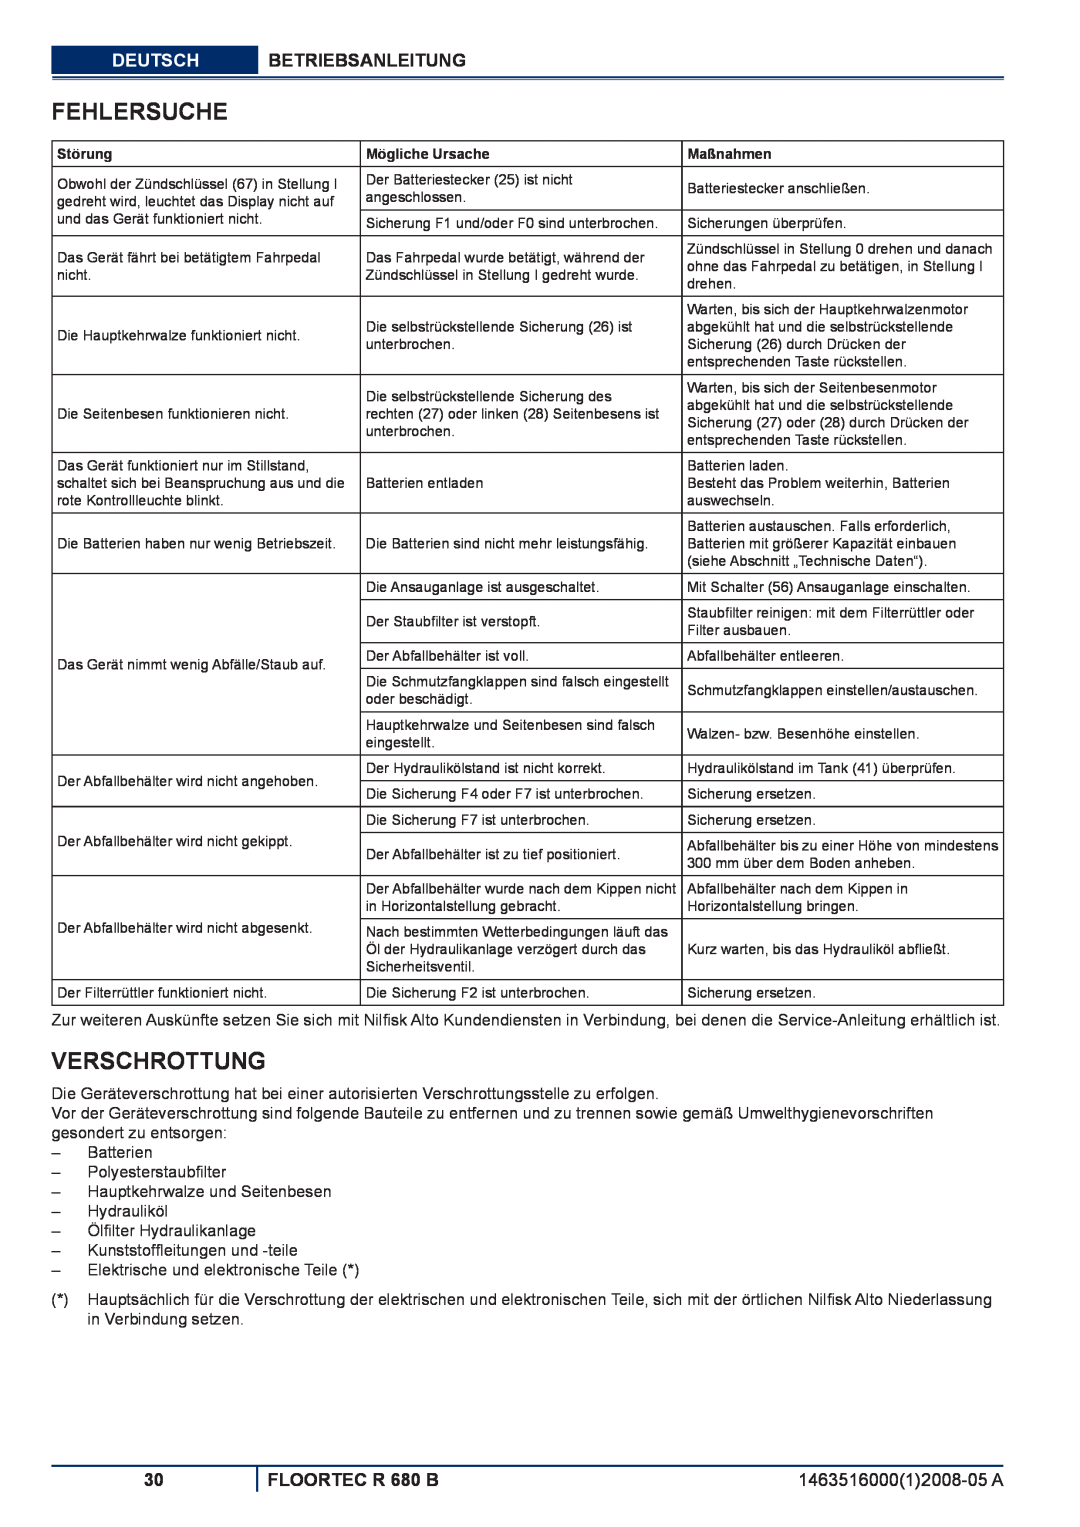 Nilfisk-ALTO manuel dutilisation Fehlersuche, Verschrottung, Deutsch Betriebsanleitung, FLOORTEC R 680 B 